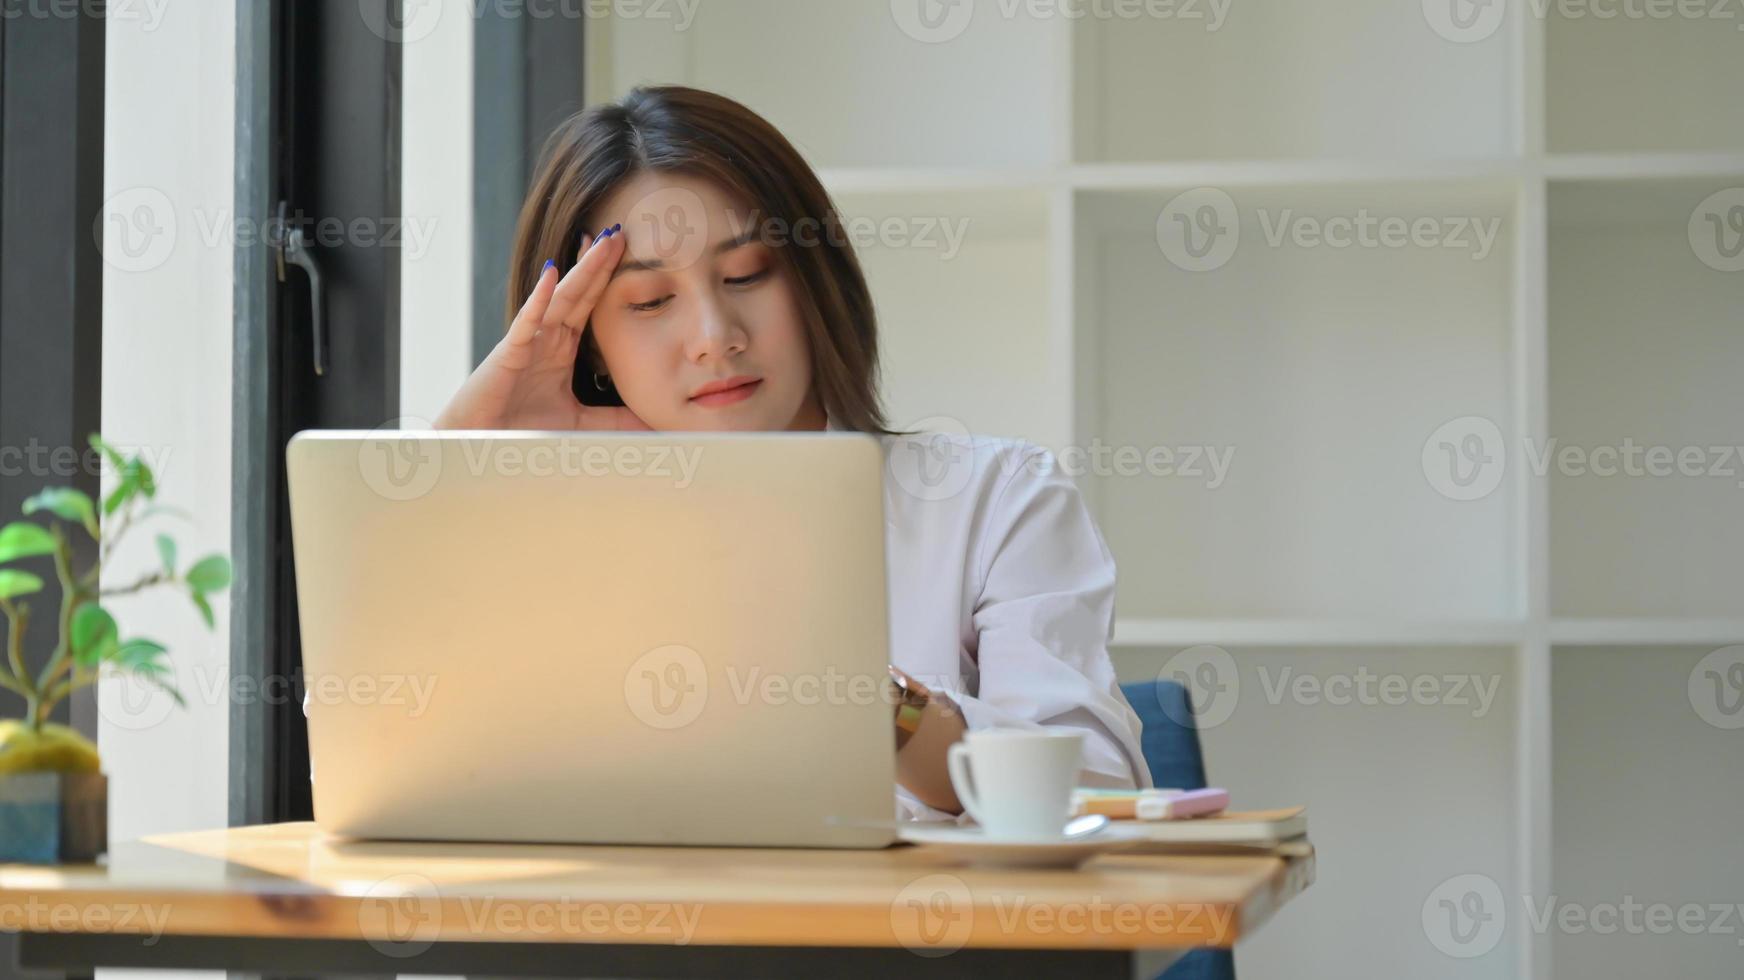 una giovane donna usa un laptop per lavoro, lavora da casa ed è stanca. foto